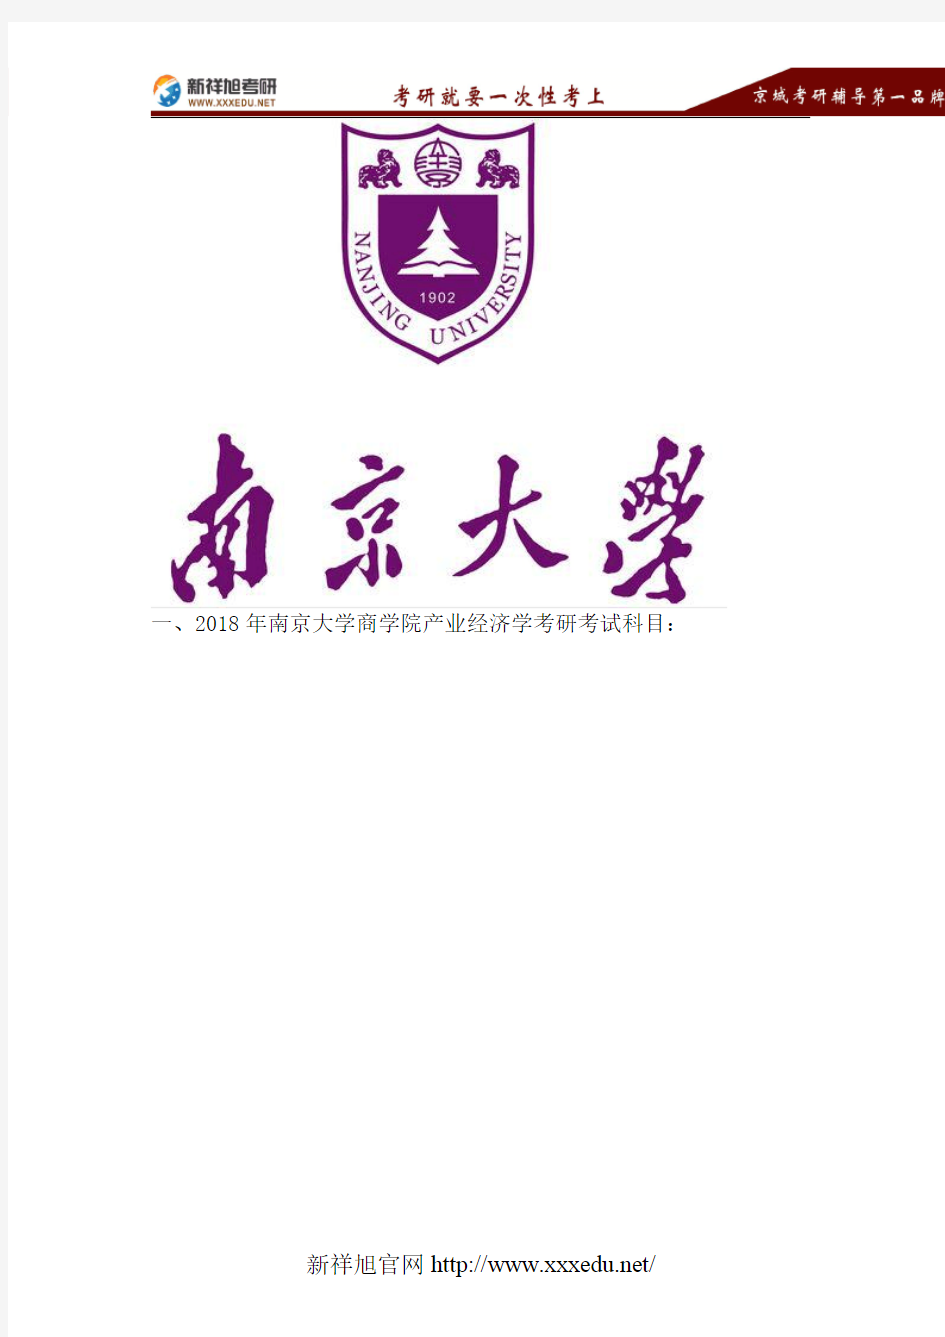 2018南京大学产业经济学考研专业目录、考试科目、参考书目、复试分数线、报录比、拟录取名单、复试安排